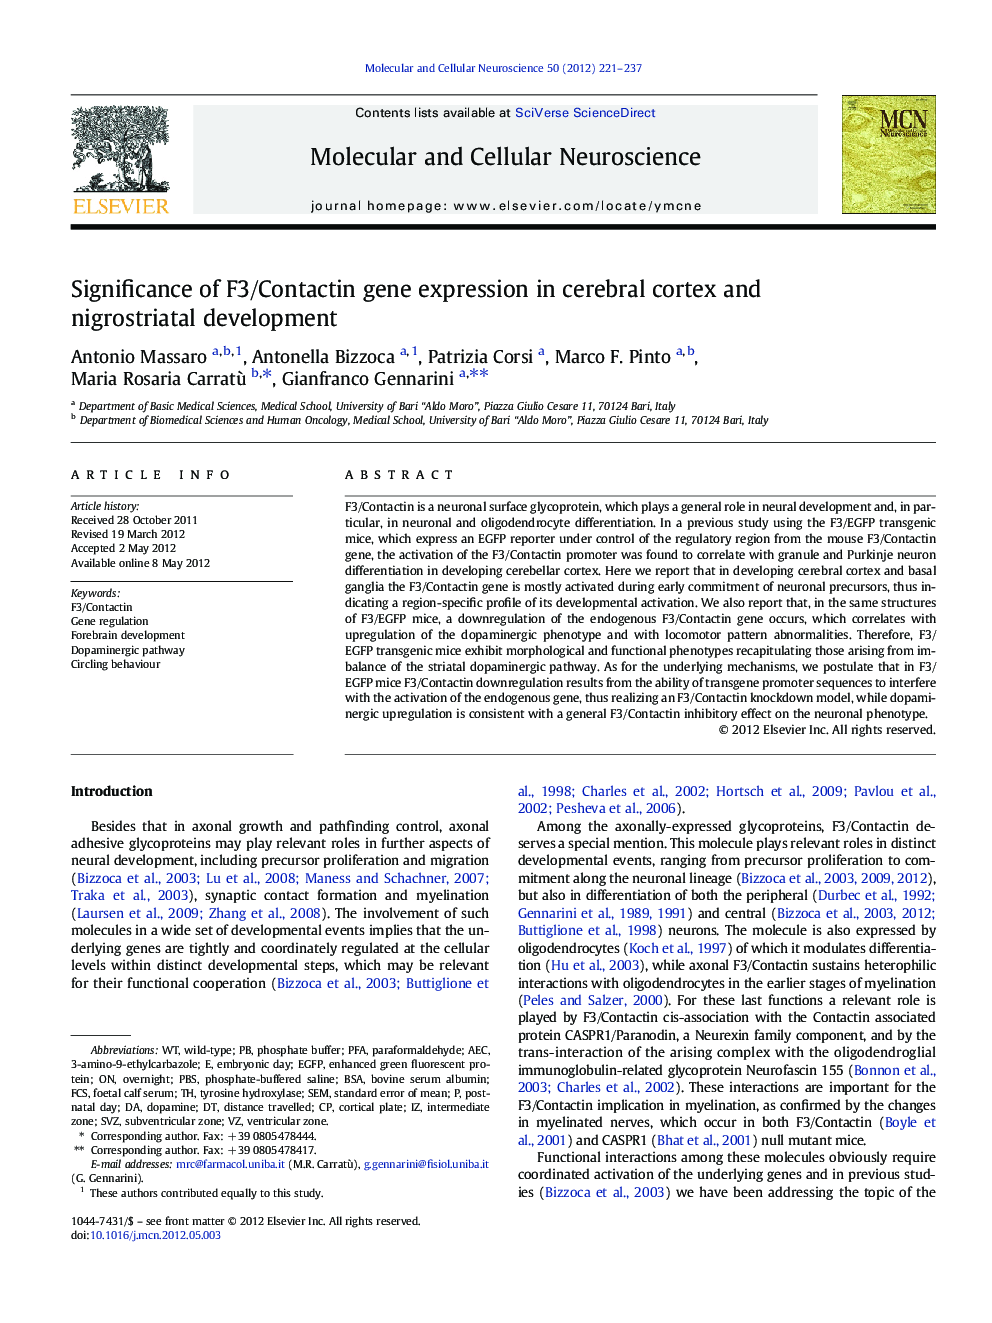 Significance of F3/Contactin gene expression in cerebral cortex and nigrostriatal development